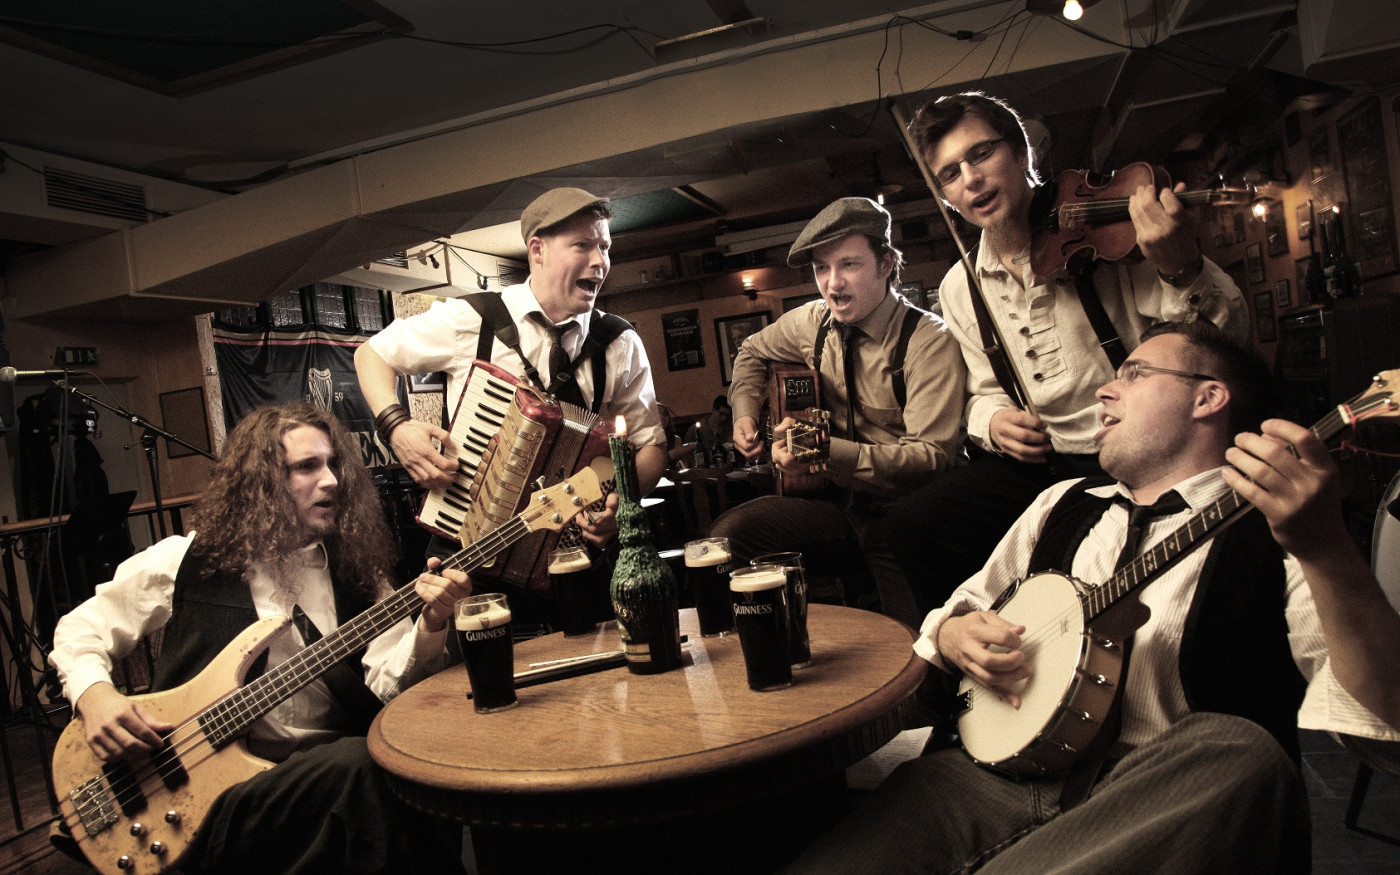 Clonmac Noise bereichern das Altstadtfest Gifhorn mit Irish Folk